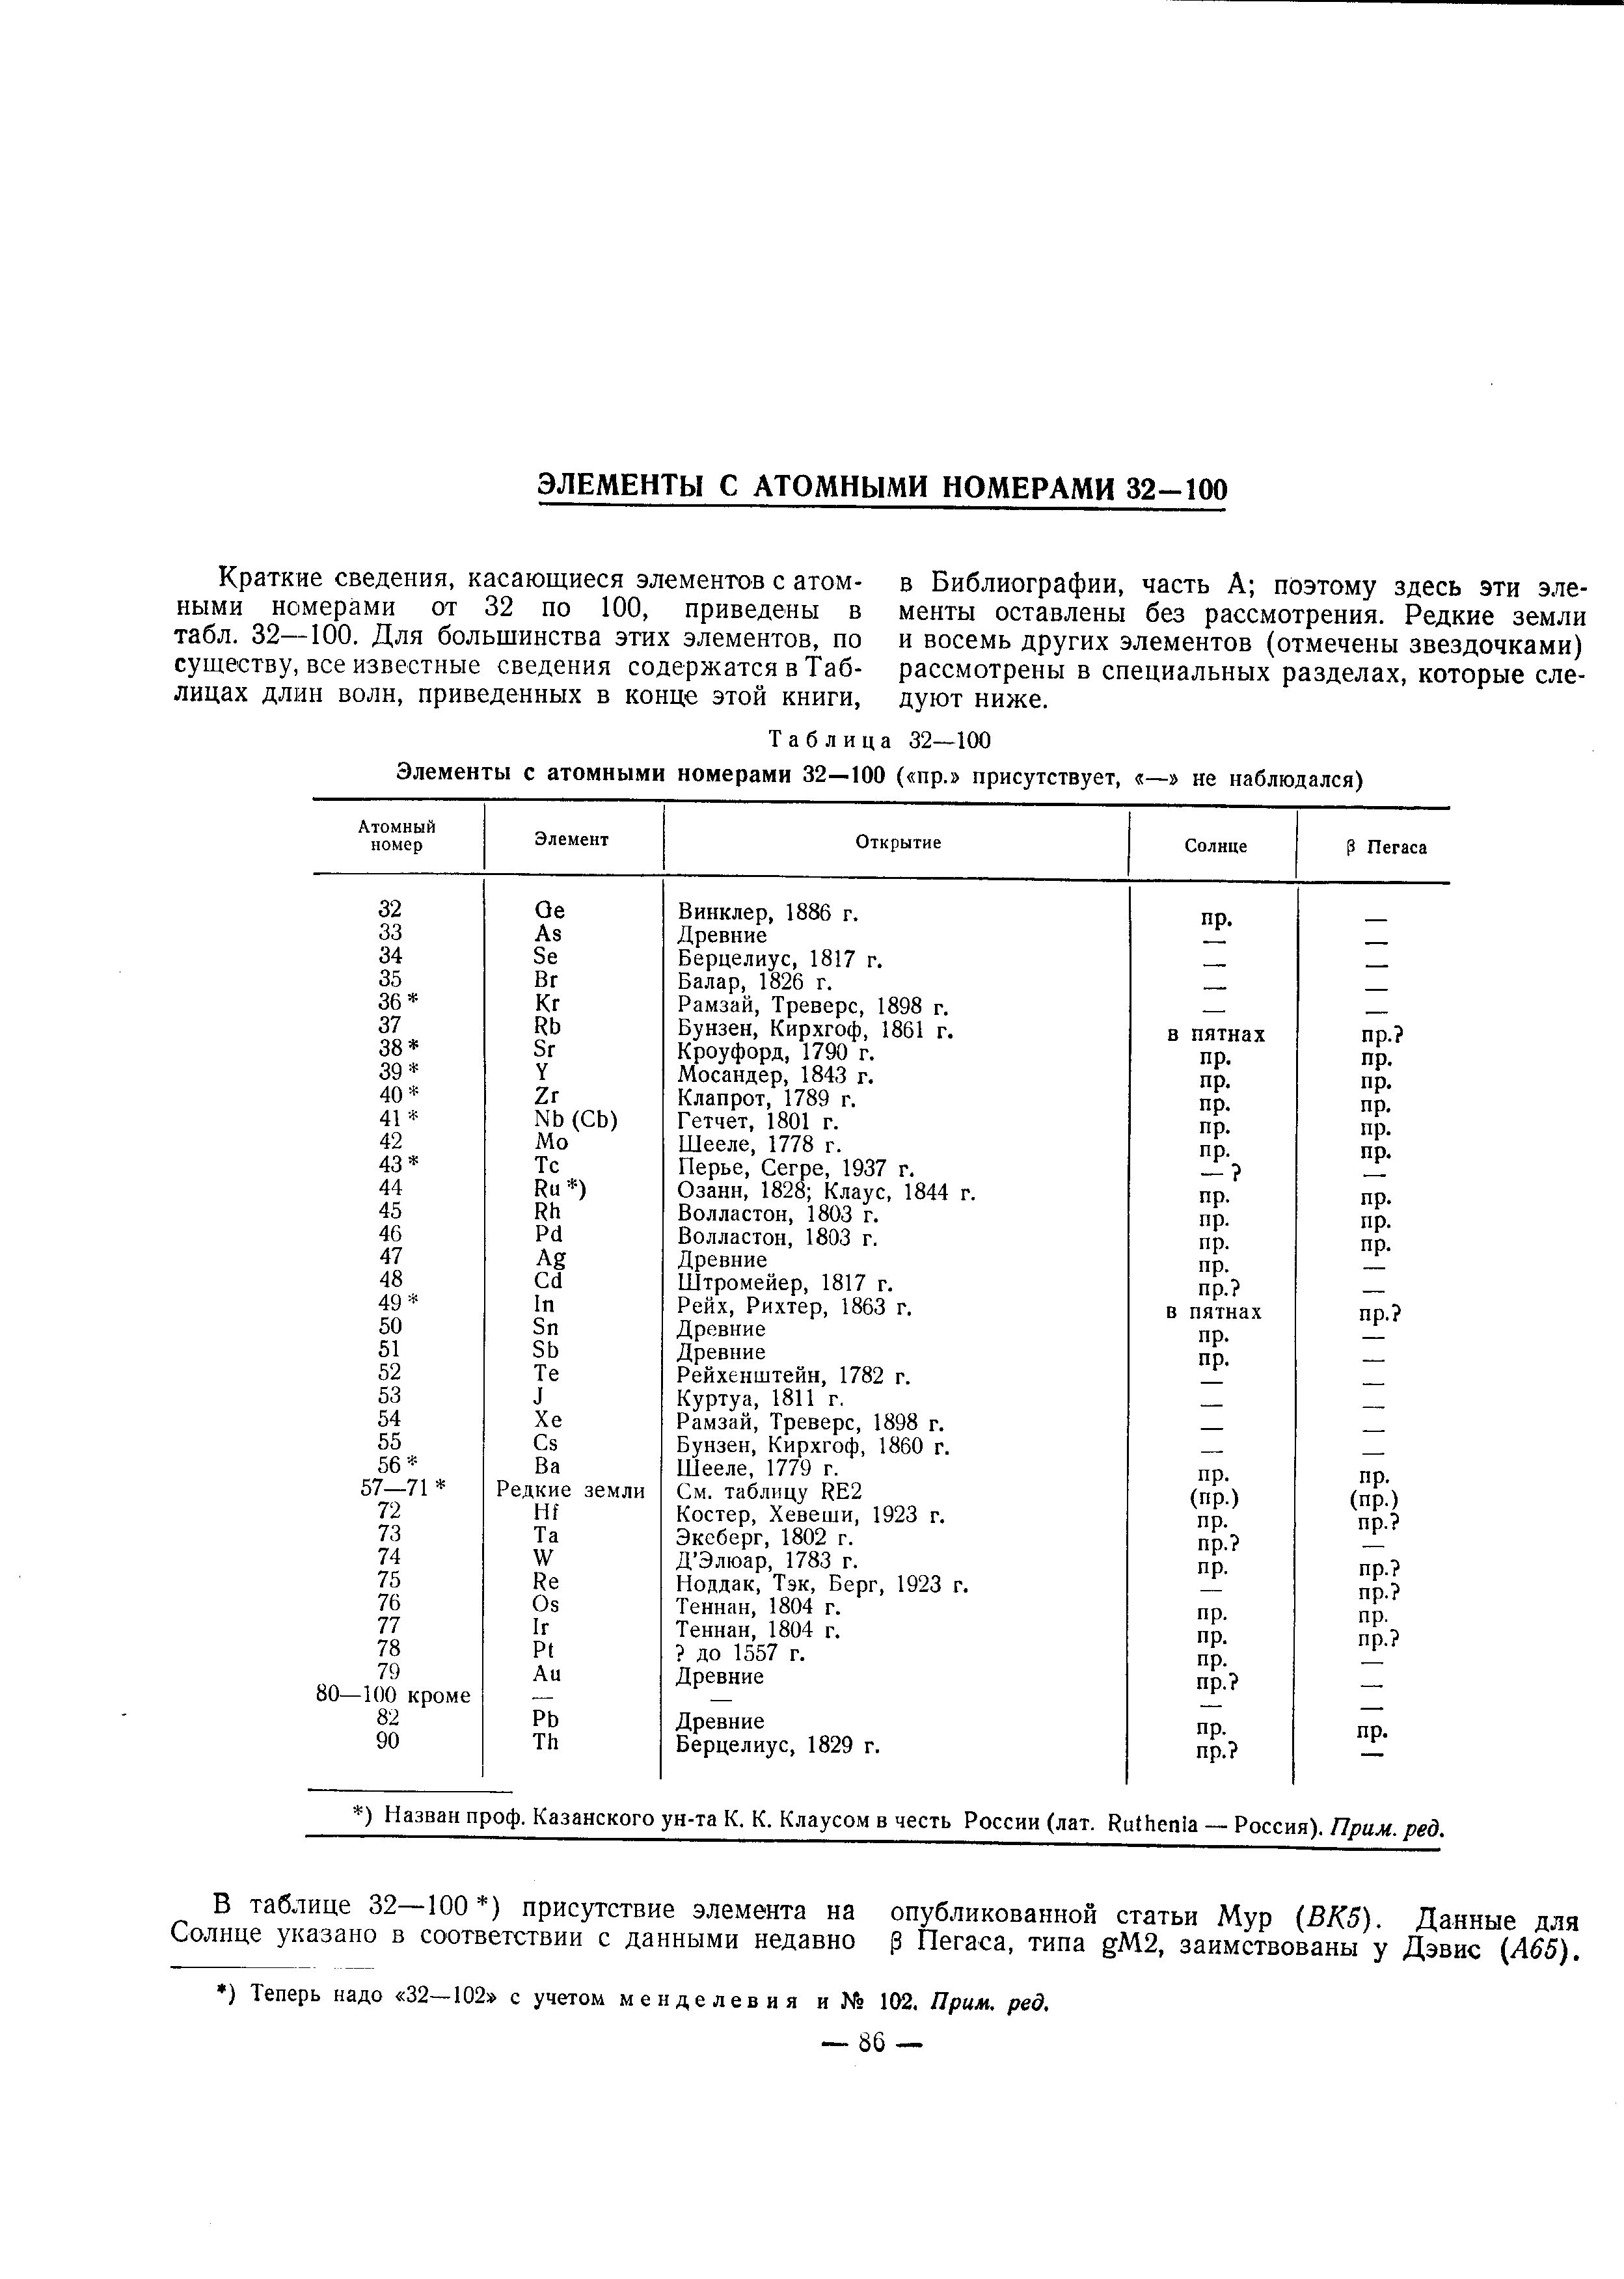 В таблице 32—100 ) присутствие элемента на опубликованной статьи Мур ВК5). Данные для Солнце указано в соответствии с данными недавно р Пегаса, типа gM2, заимствованы у Дэвис (Лб5).